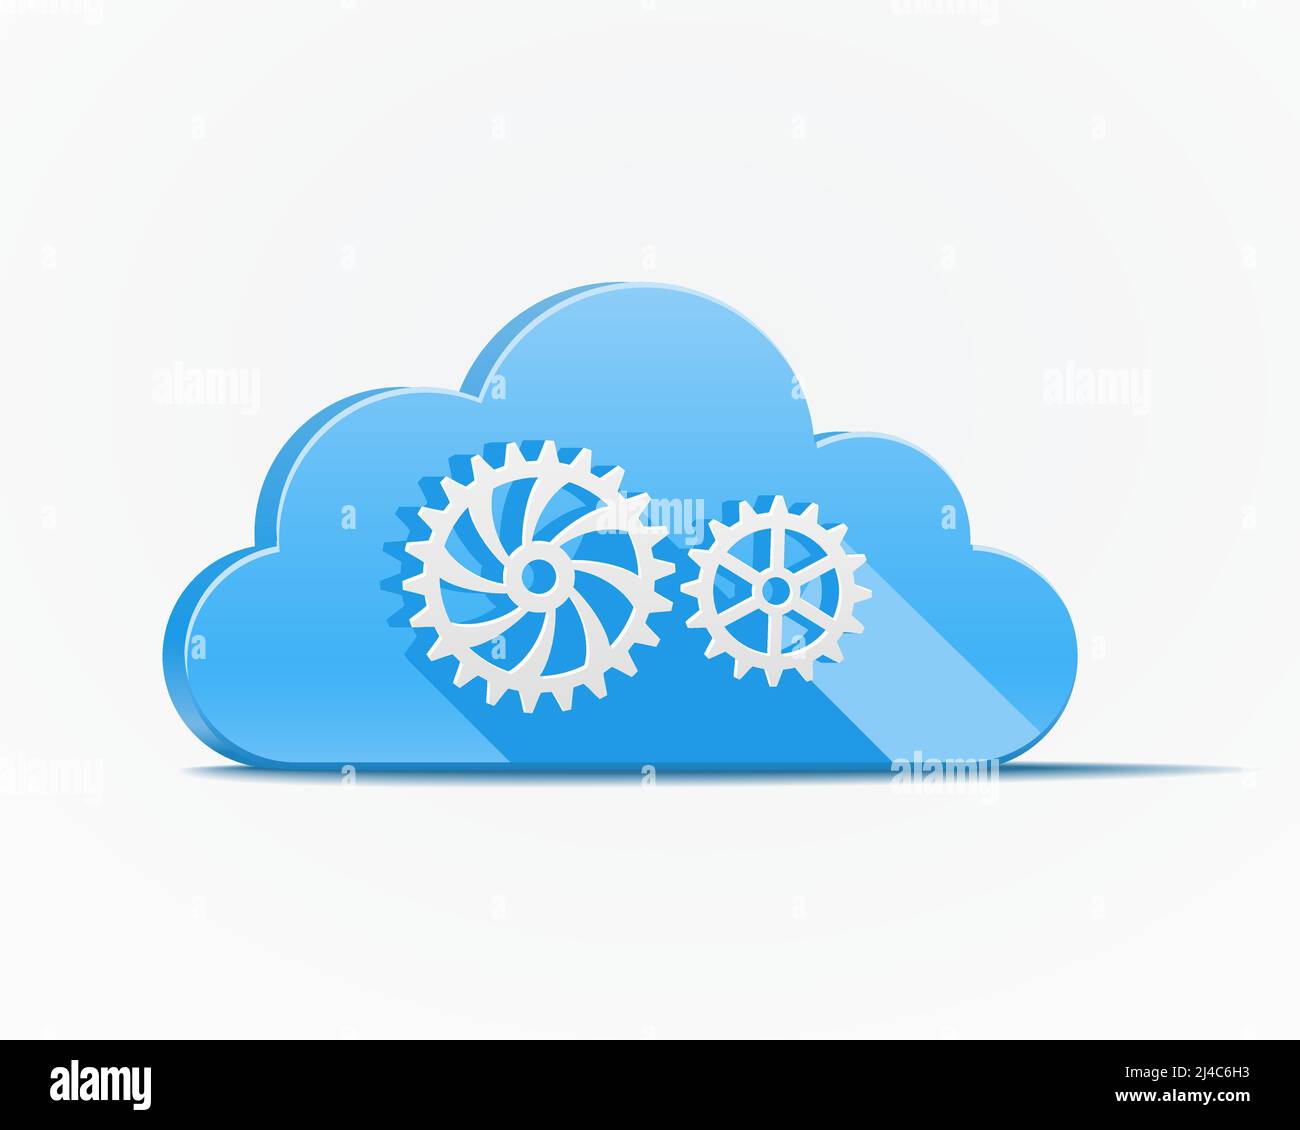 Nuage bleu avec engrenages ou roues dentées illustrant le cloud computing illustration vectorielle de l'industrie et de la mécanisation Illustration de Vecteur